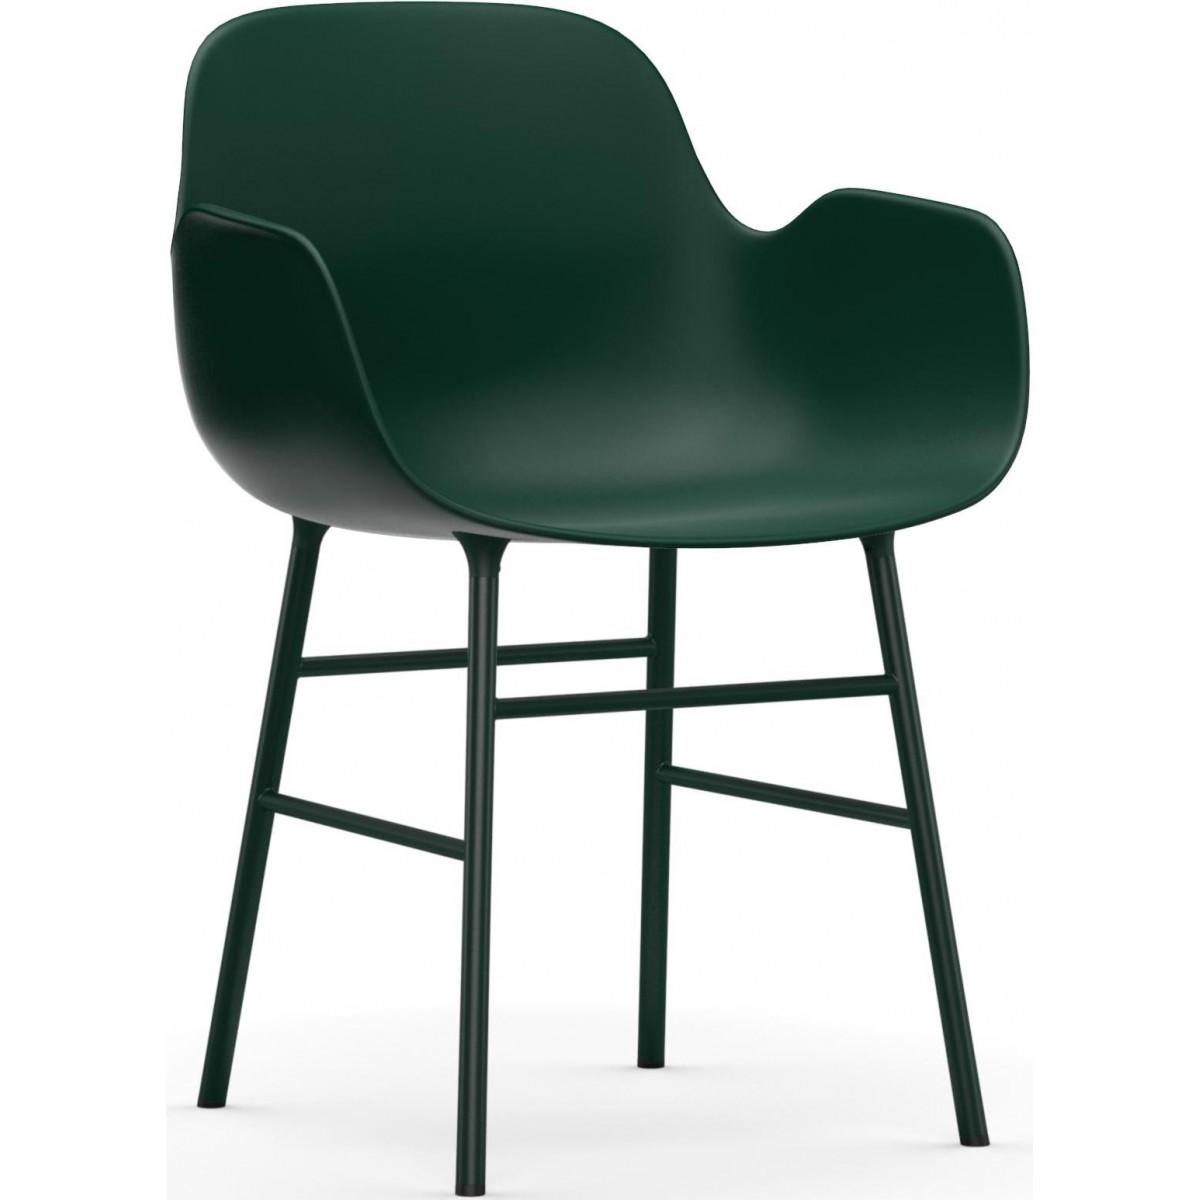 vert / vert – Chaise Form avec accoudoirs